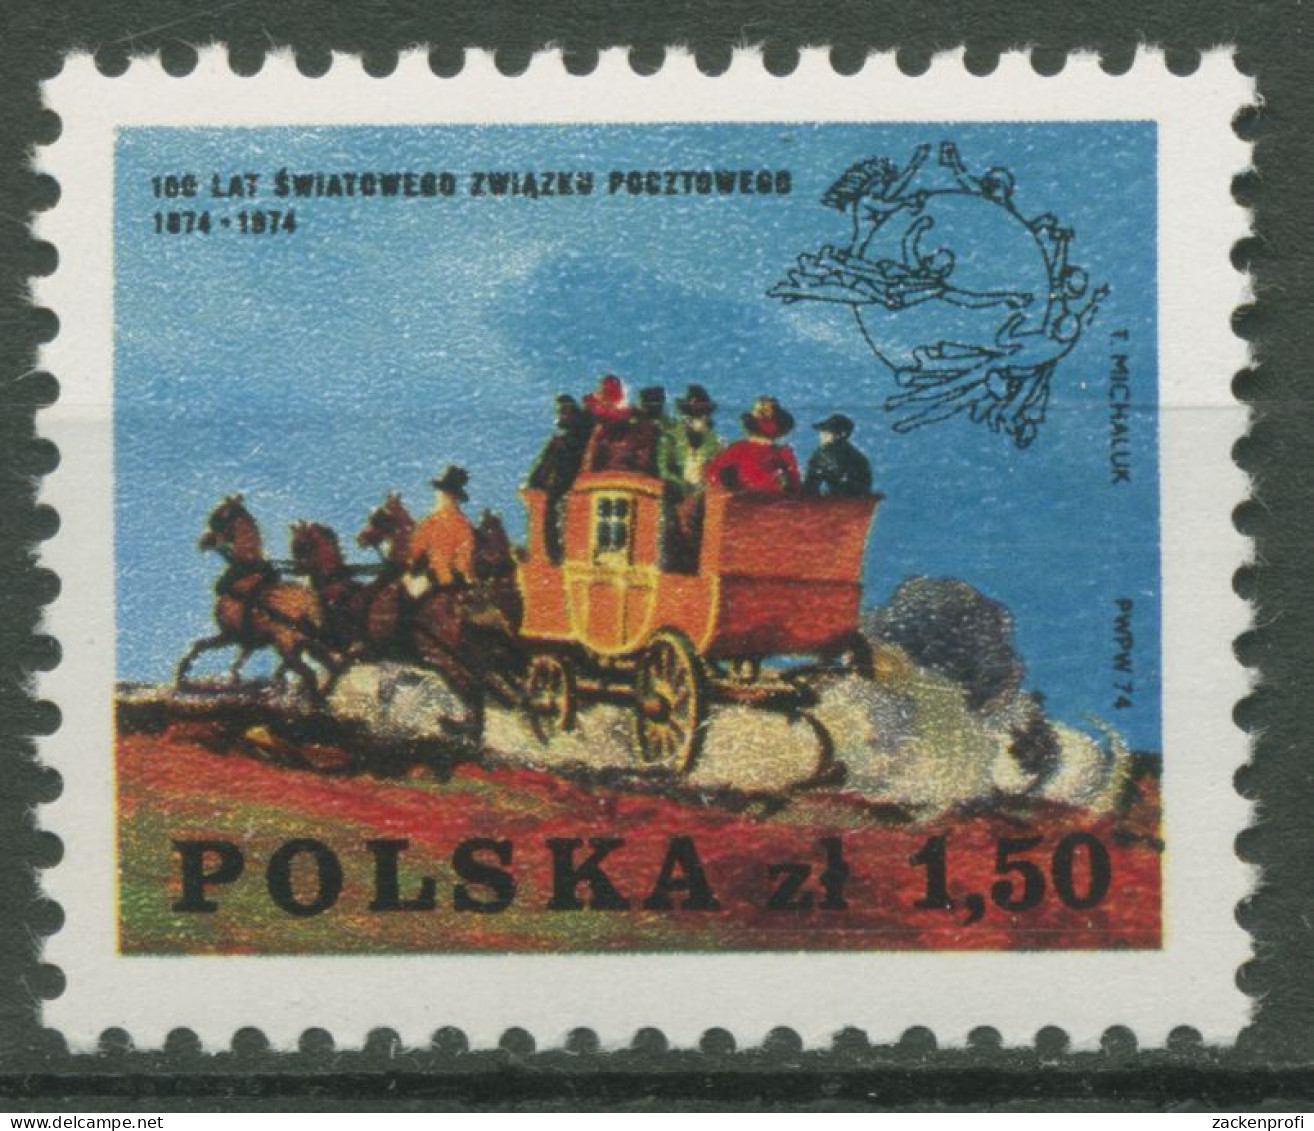 Polen 1974 Weltpostverein UPU Postkutsche 2308 Postfrisch - Ungebraucht